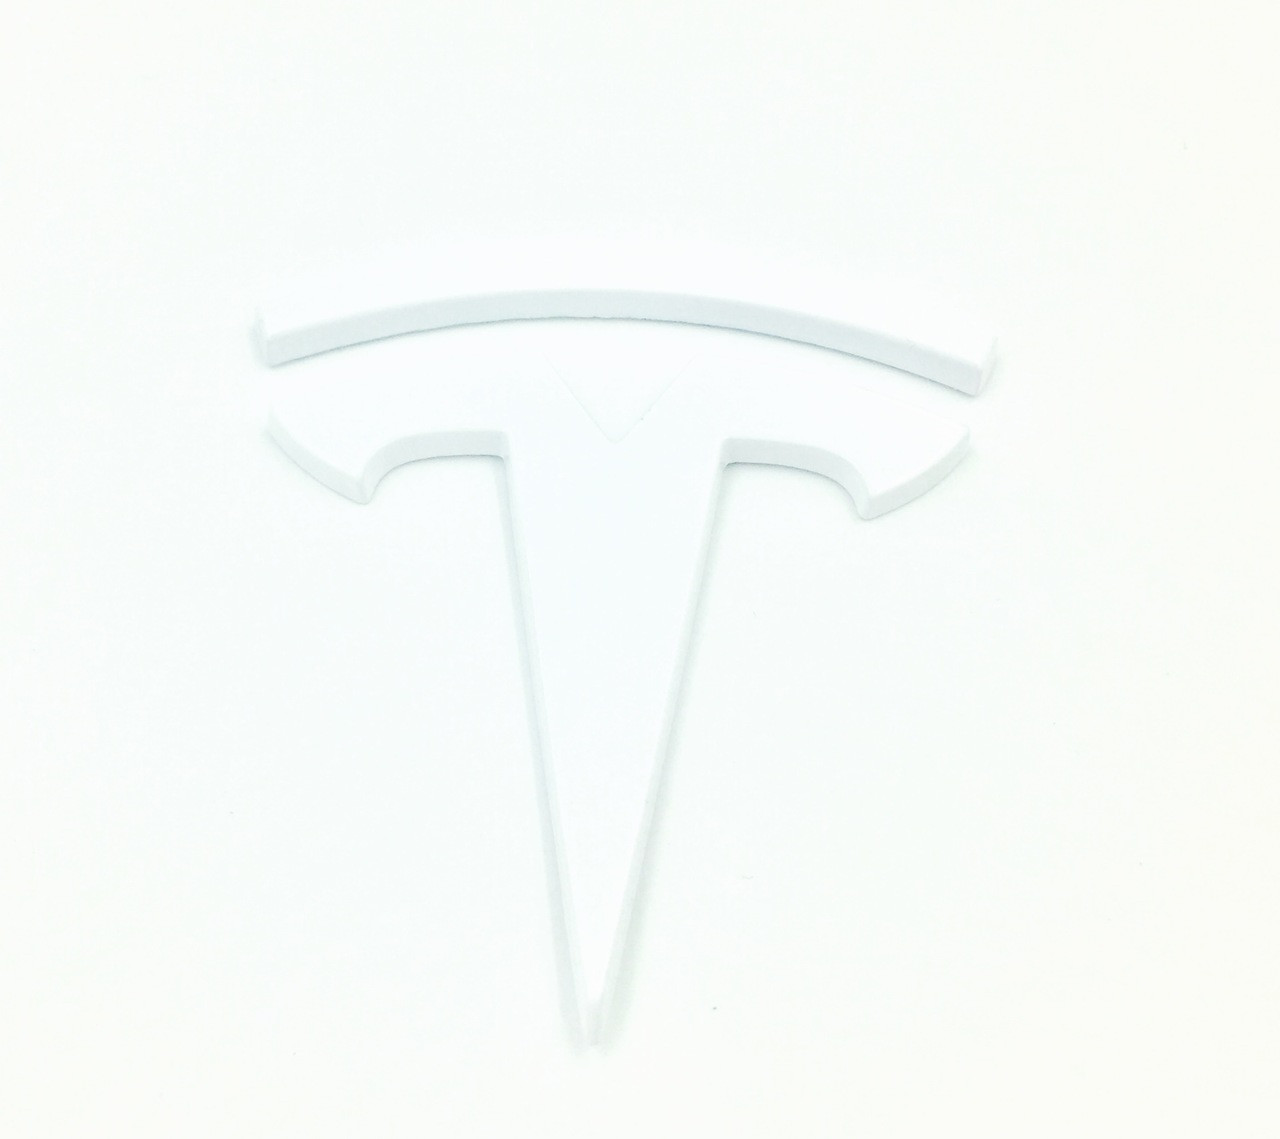 2016-2020 Model S "T" Badge Emblem Replacements (Custom Colors)